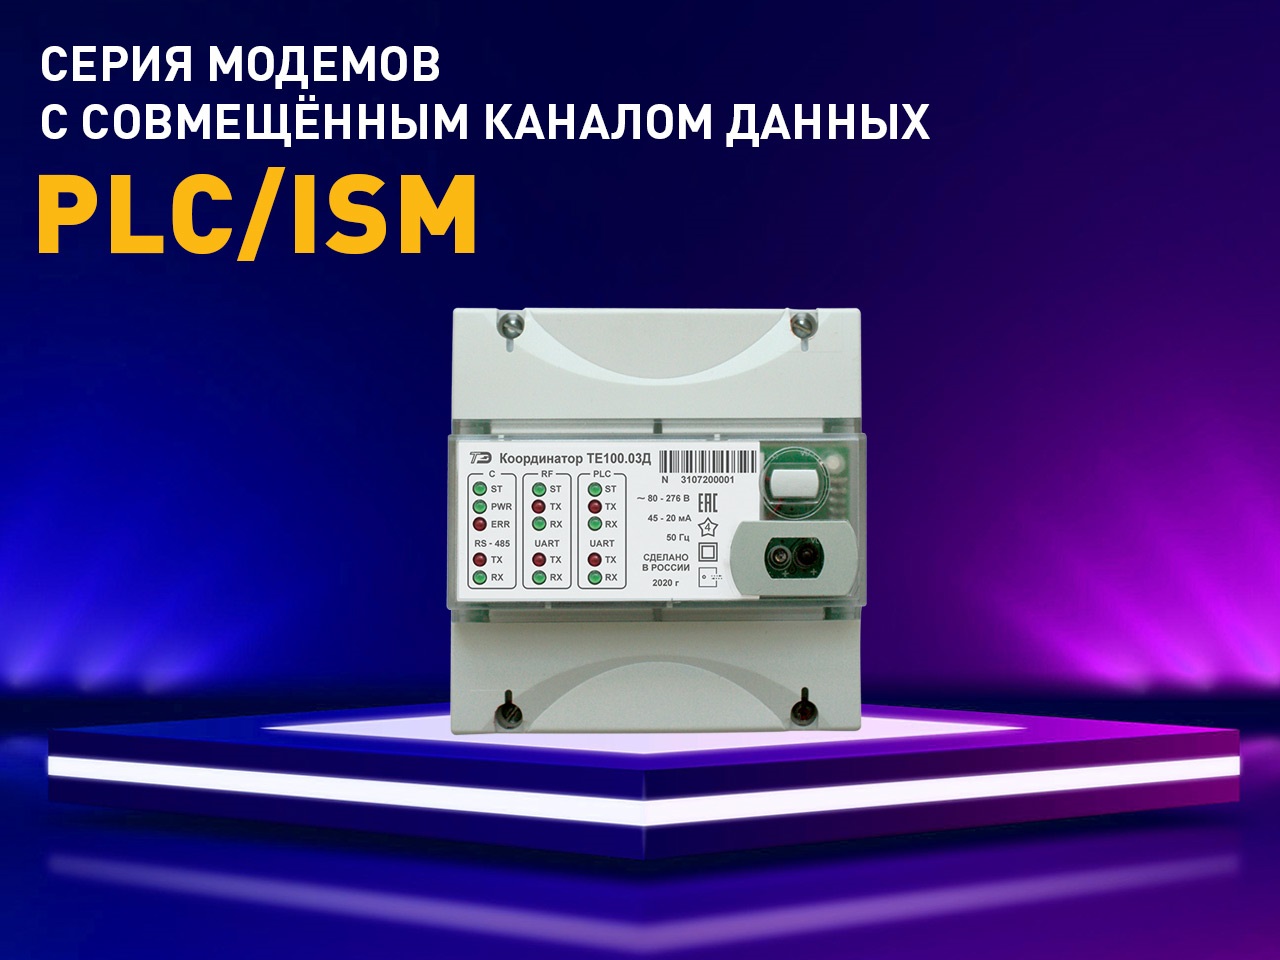 Серия модемов с совмещенным каналом передачи данных PLC/ISM